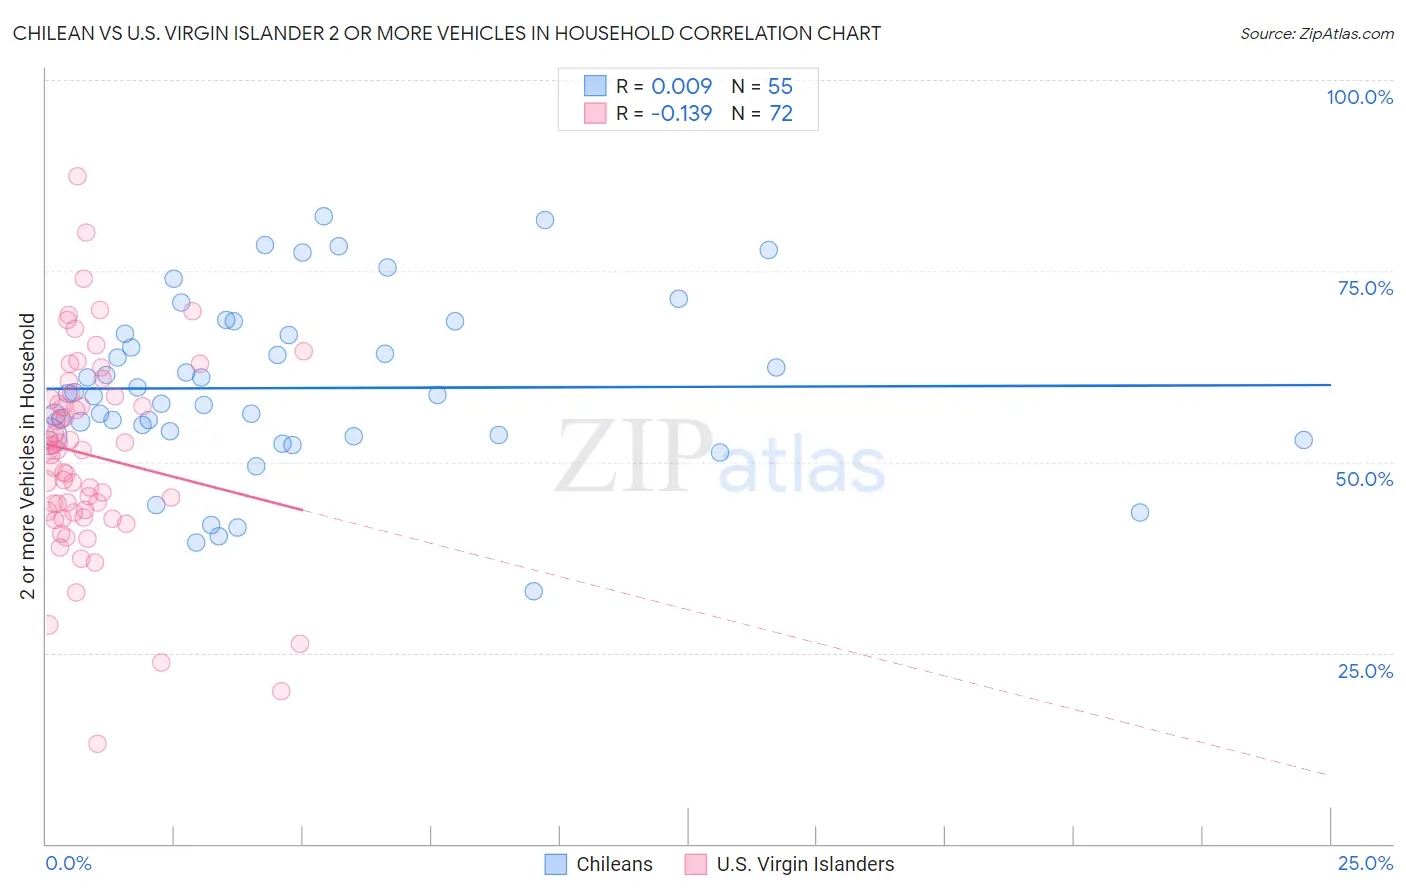 Chilean vs U.S. Virgin Islander 2 or more Vehicles in Household